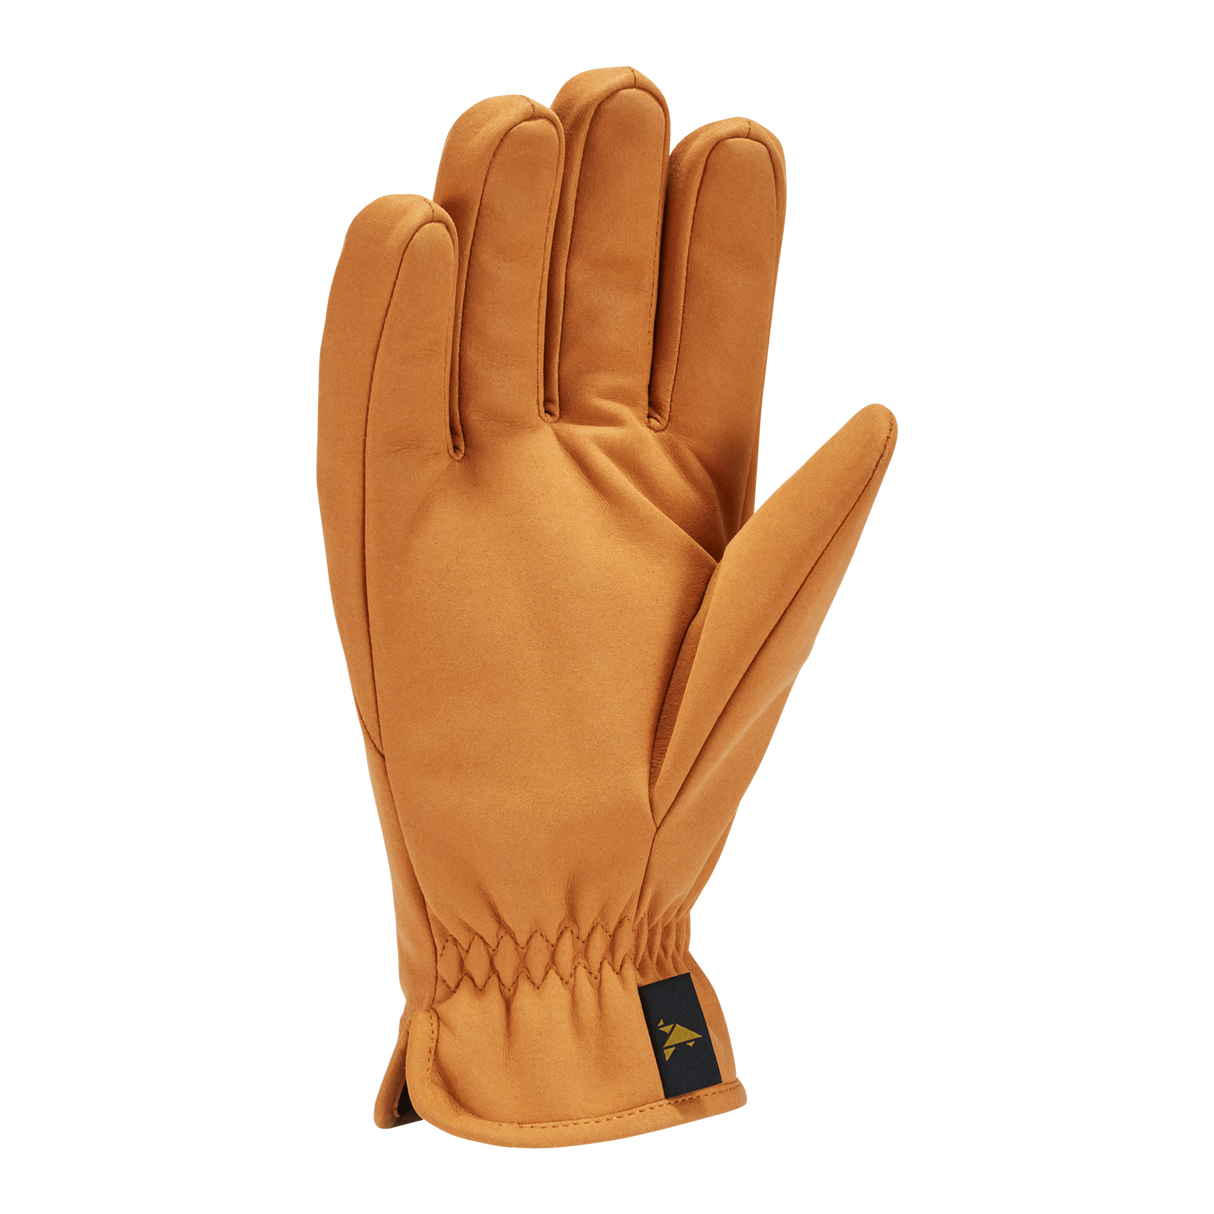 Gordini Mens Fayston Gloves  - 